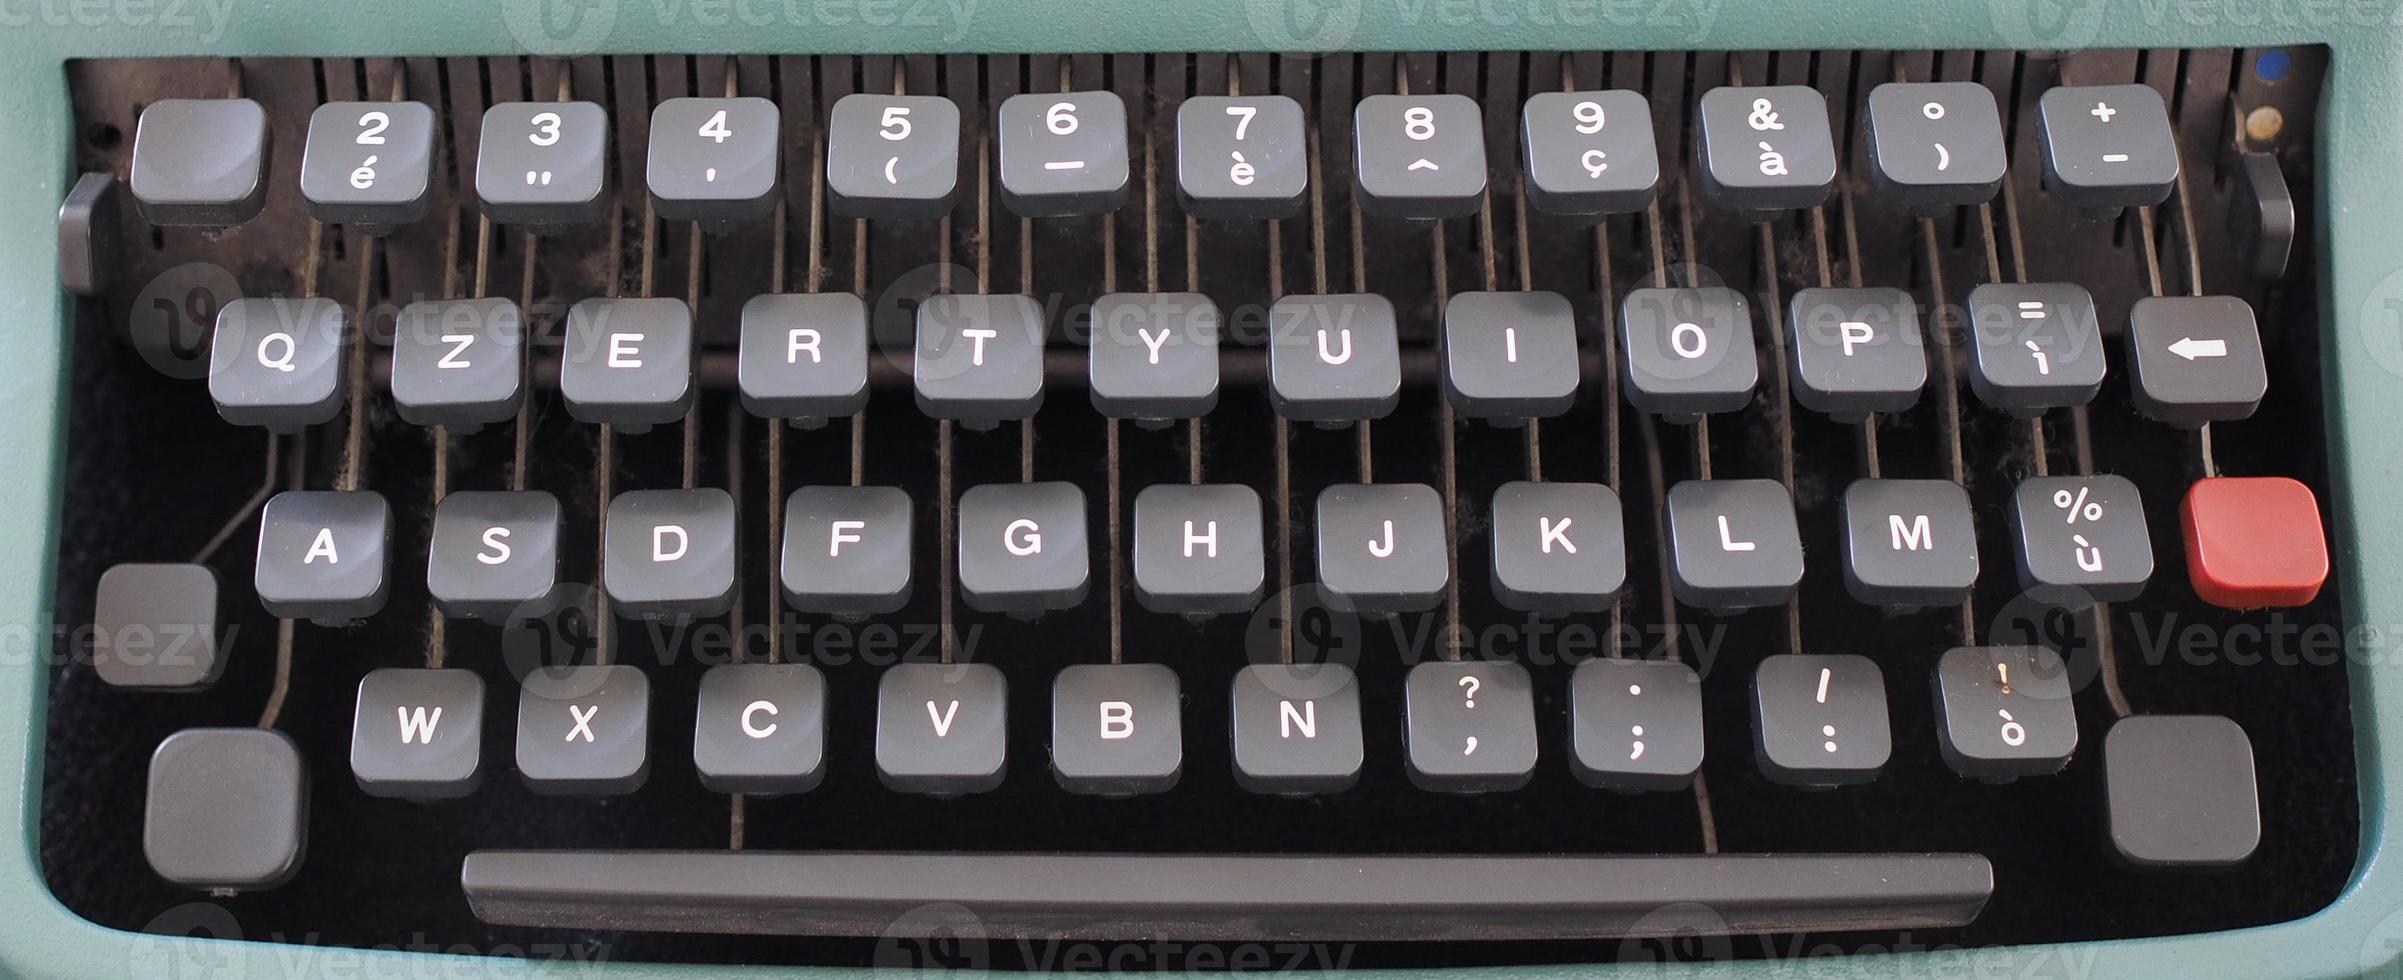 teclado de máquina de escribir vintage foto